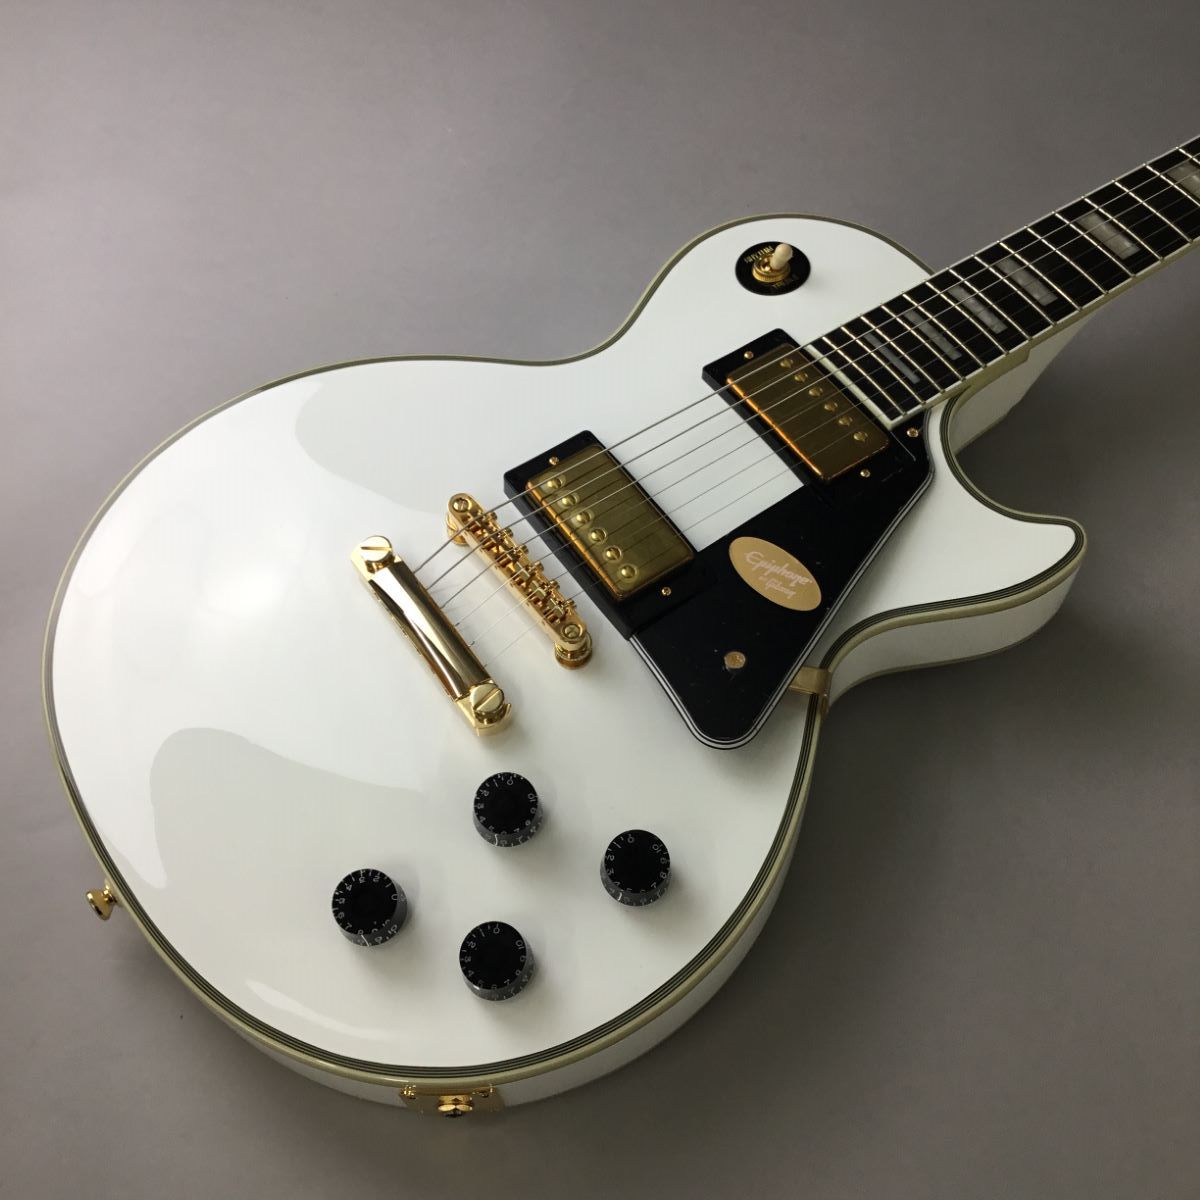 13103 上505-612 ギター エピフォン レスポール型 白 ホワイト 楽器